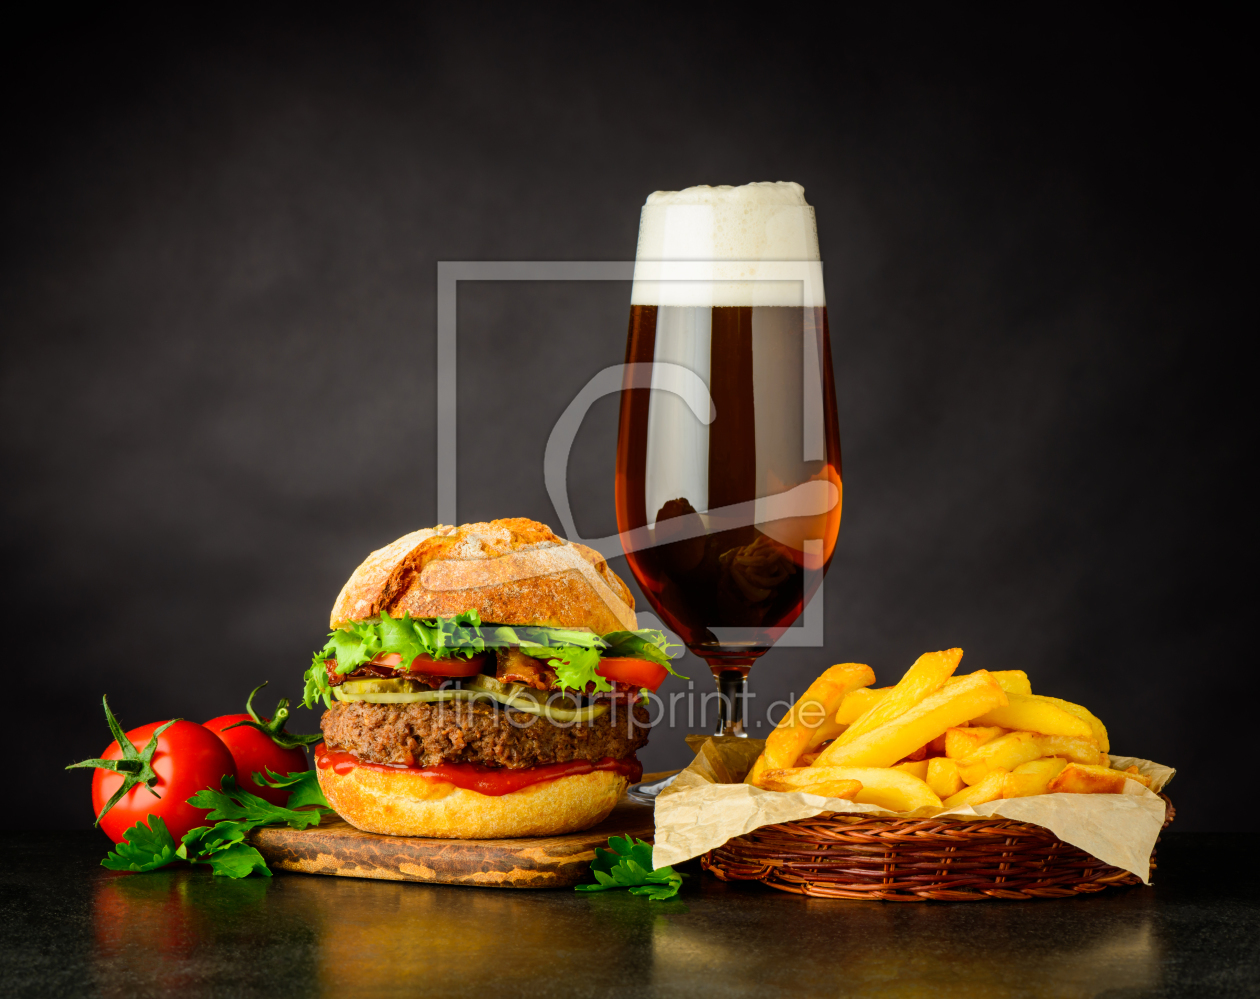 Bild-Nr.: 11913649 Hamburger mit Pommes und Bier erstellt von xfotostudio